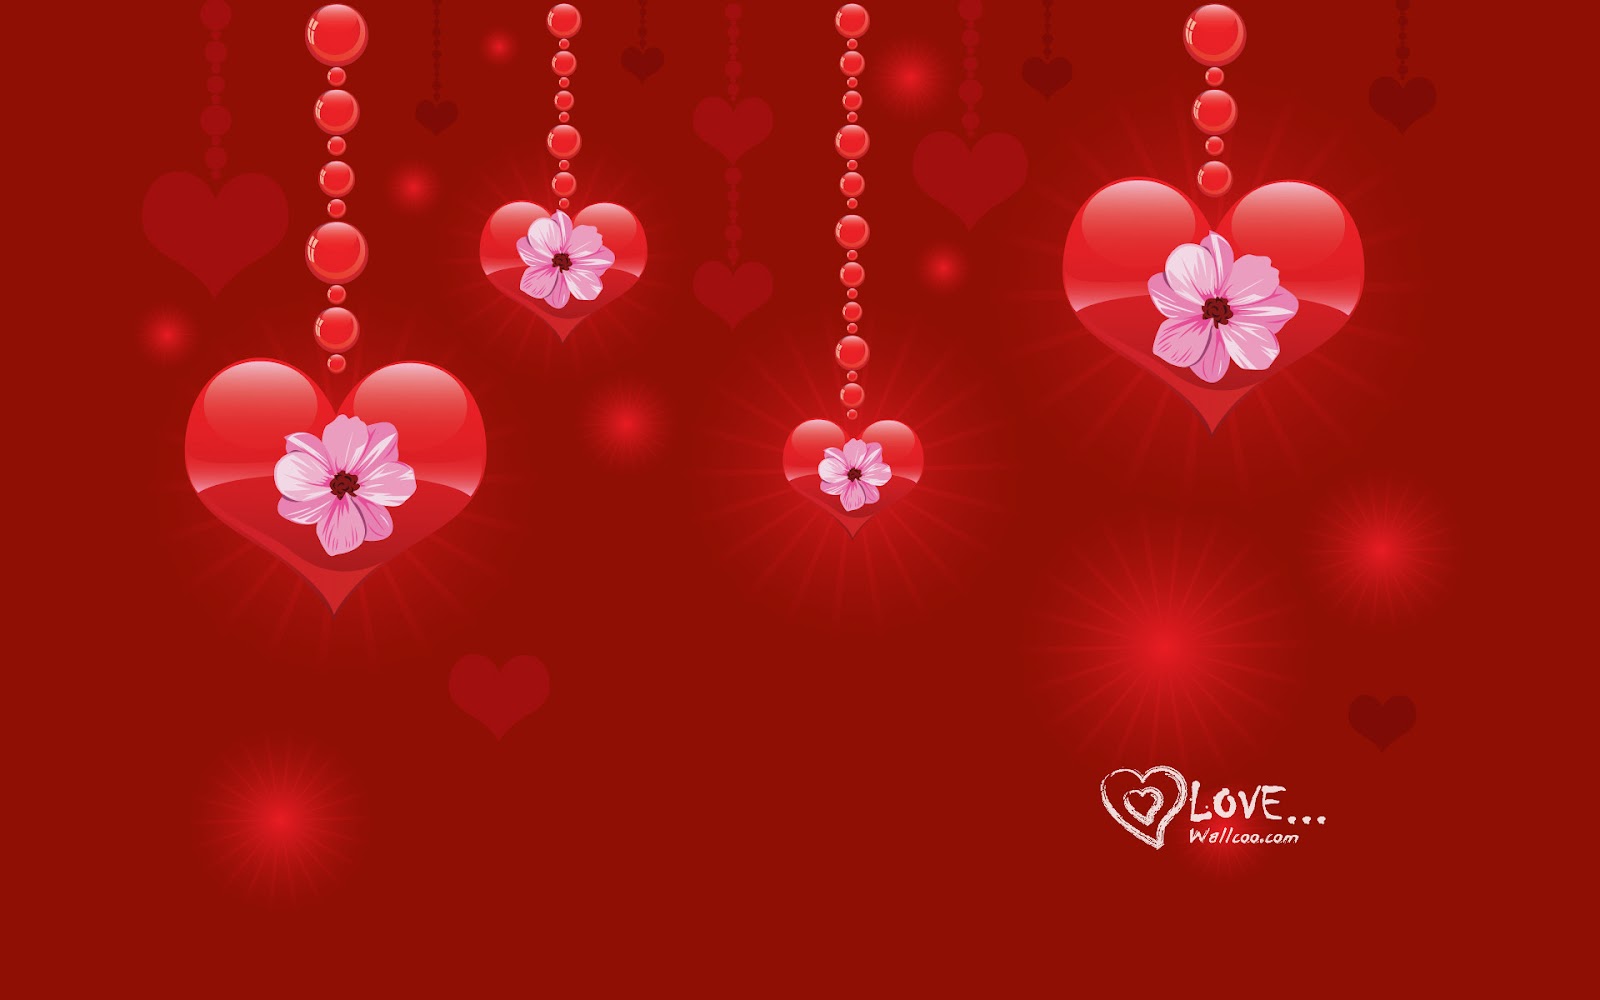 heart wallpapers red heart wallpapers red love heart